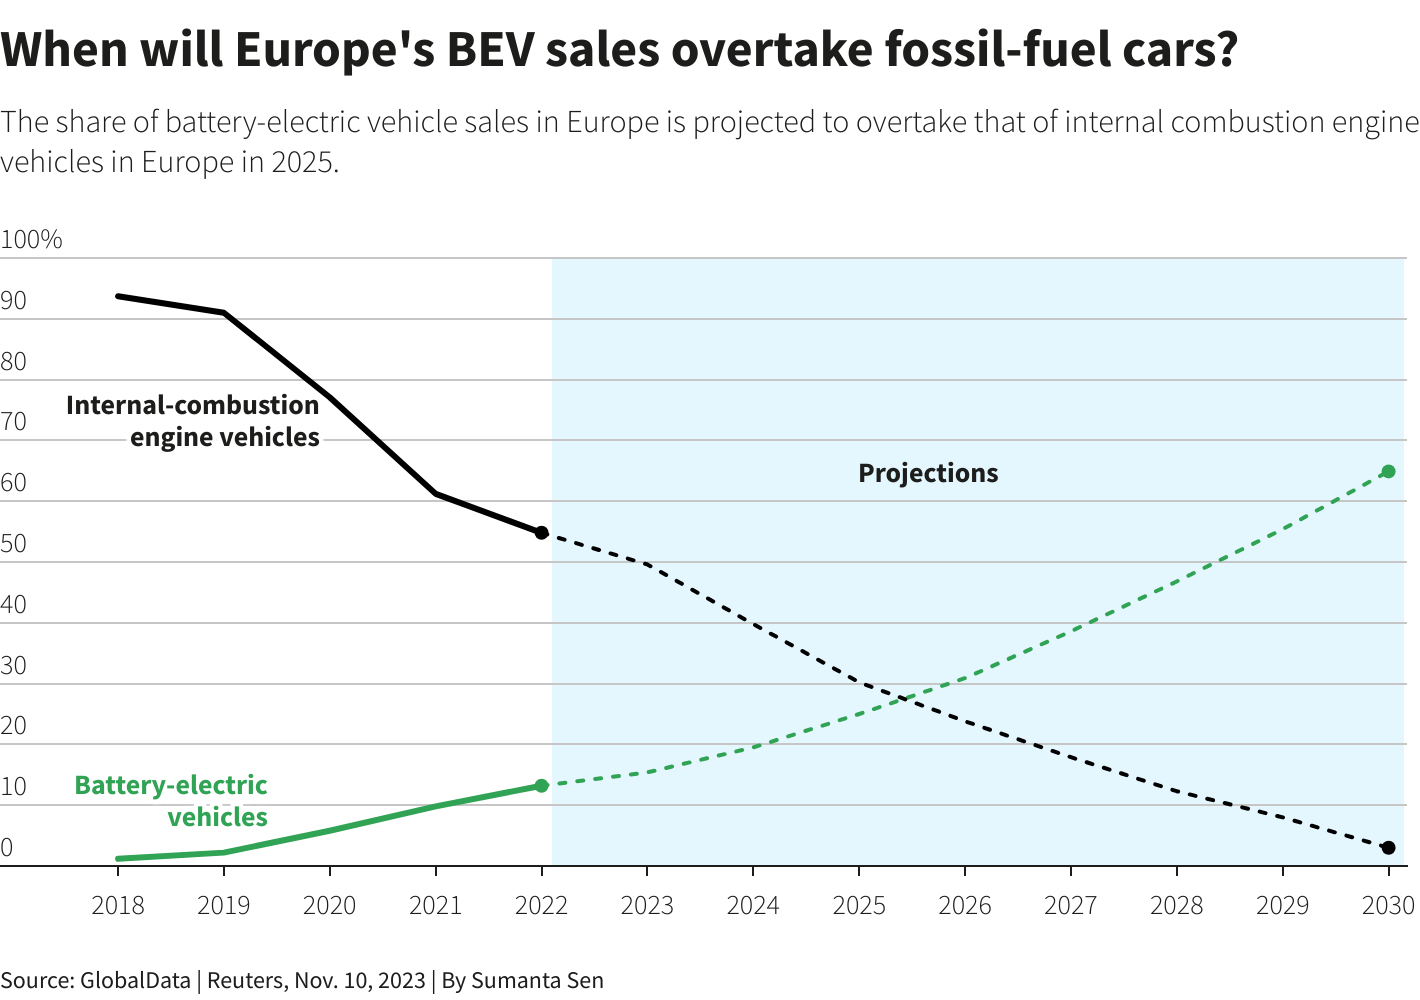 europe-bev-sales-fossil-fuel-predictions